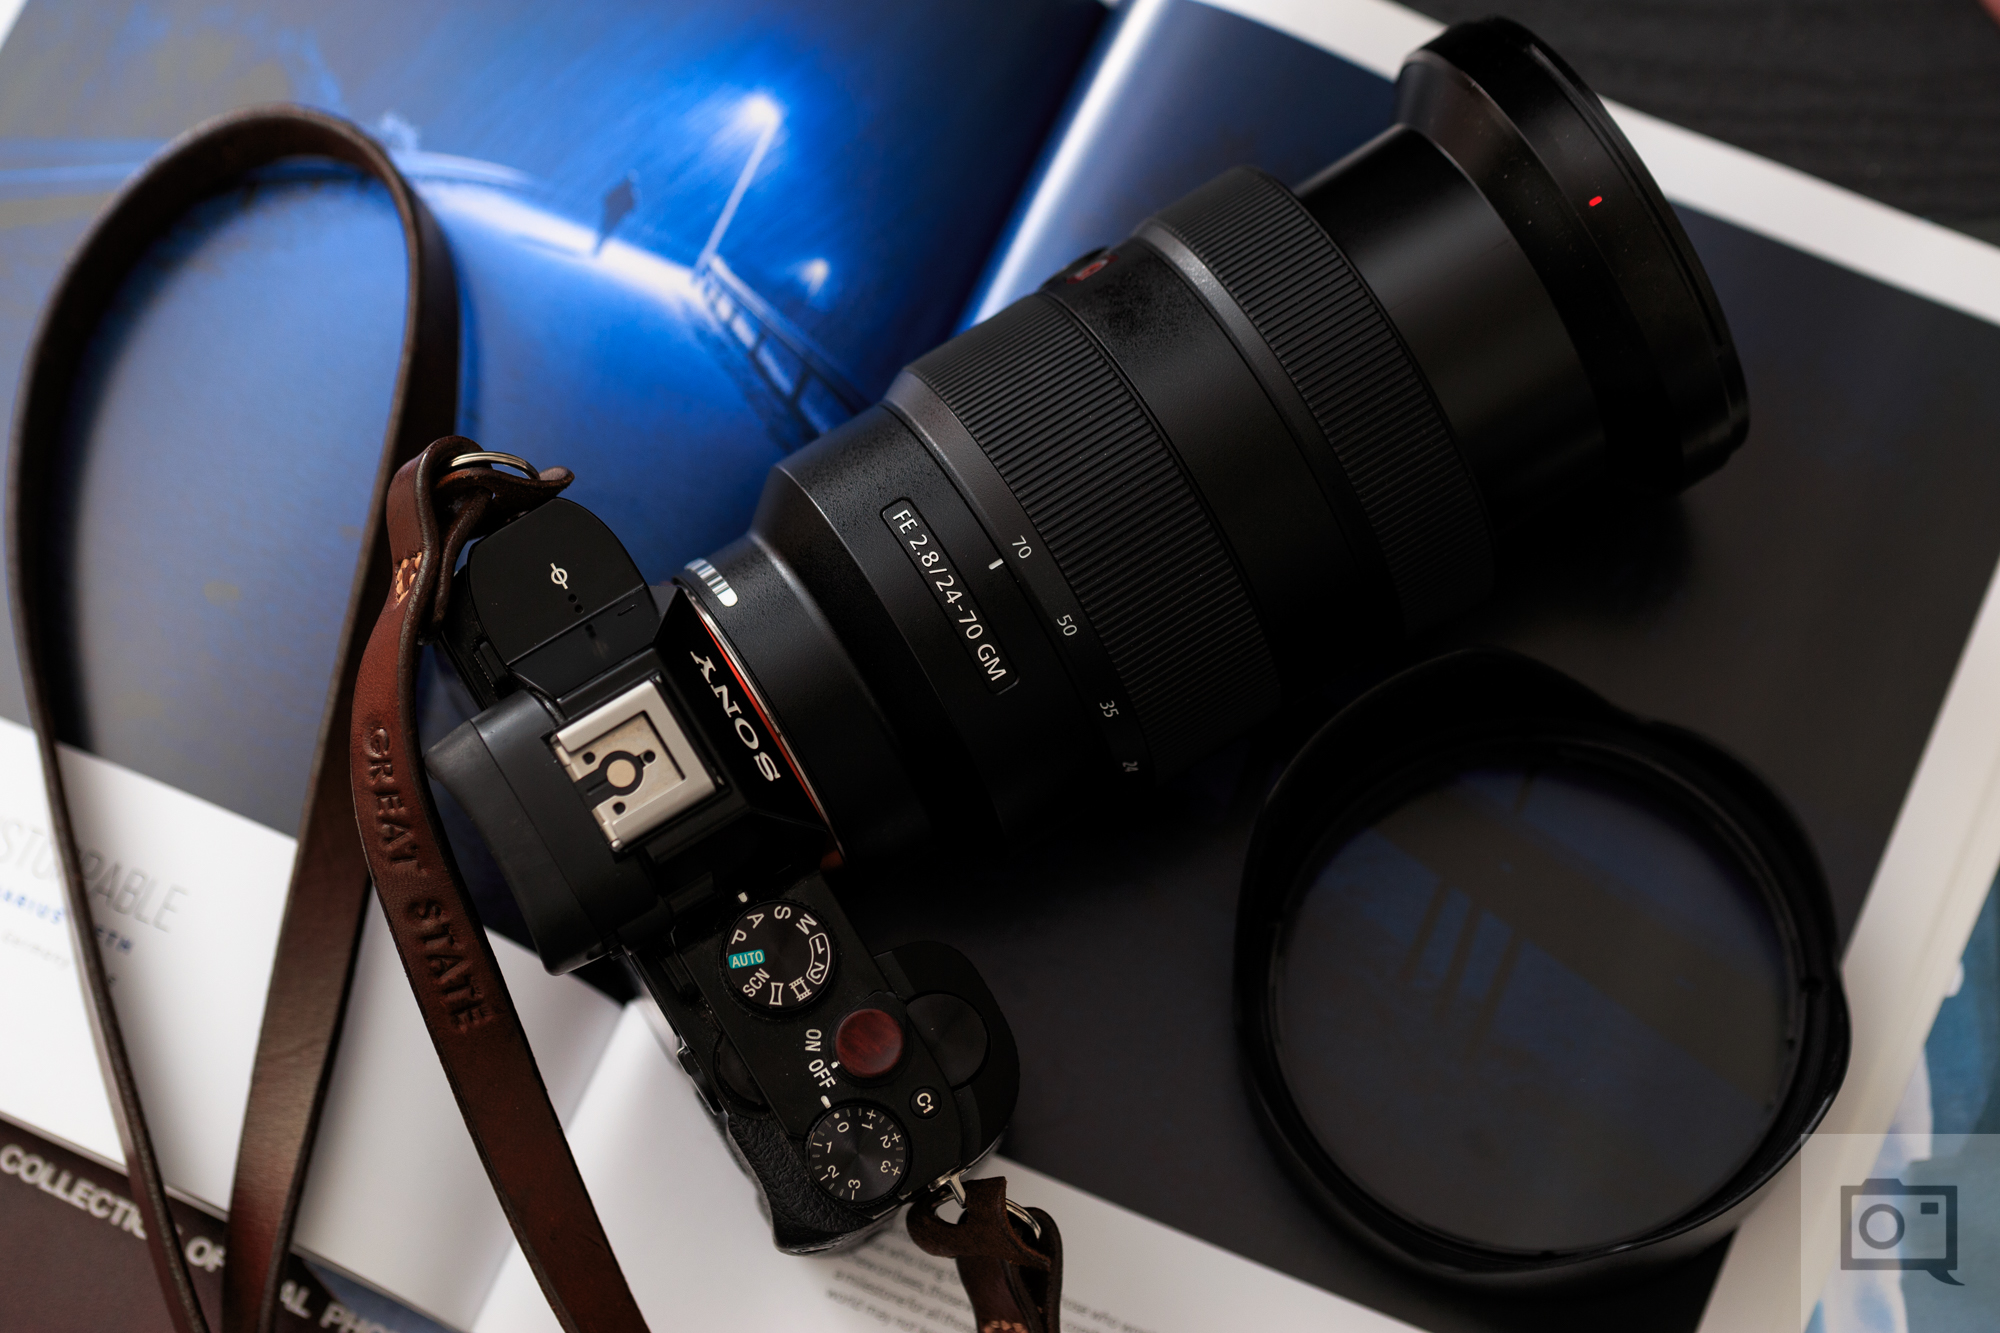 Sony - Fe 24-70mm f/2.8 GM Lens